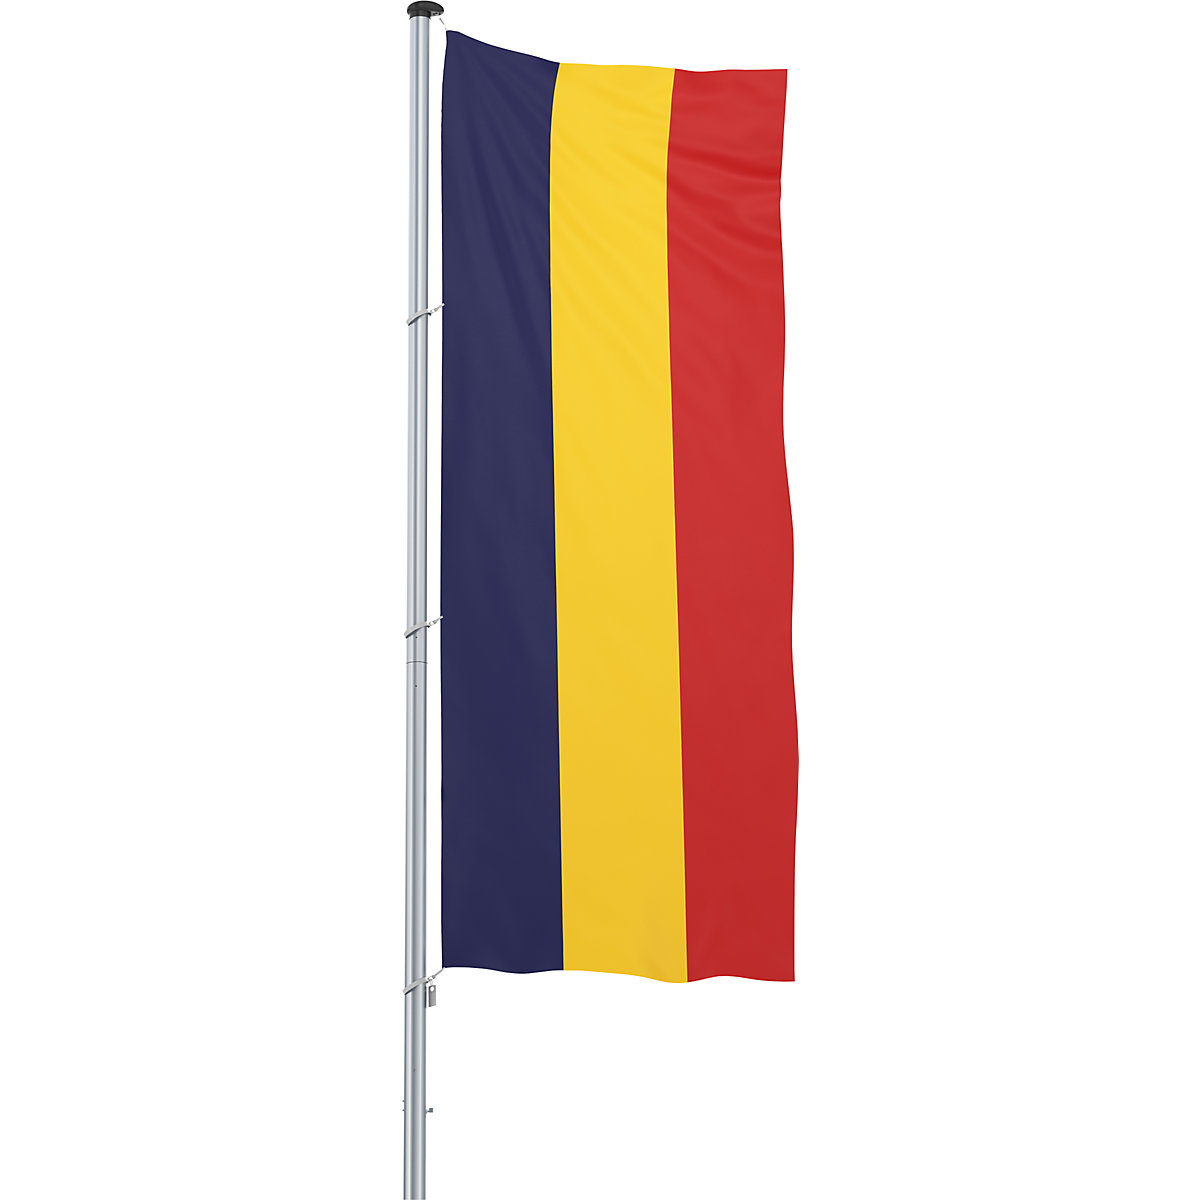 Vlajka pro vodorovné zavěšení/vlajka země – Mannus, formát 1,2 x 3 m, Rumunsko-7